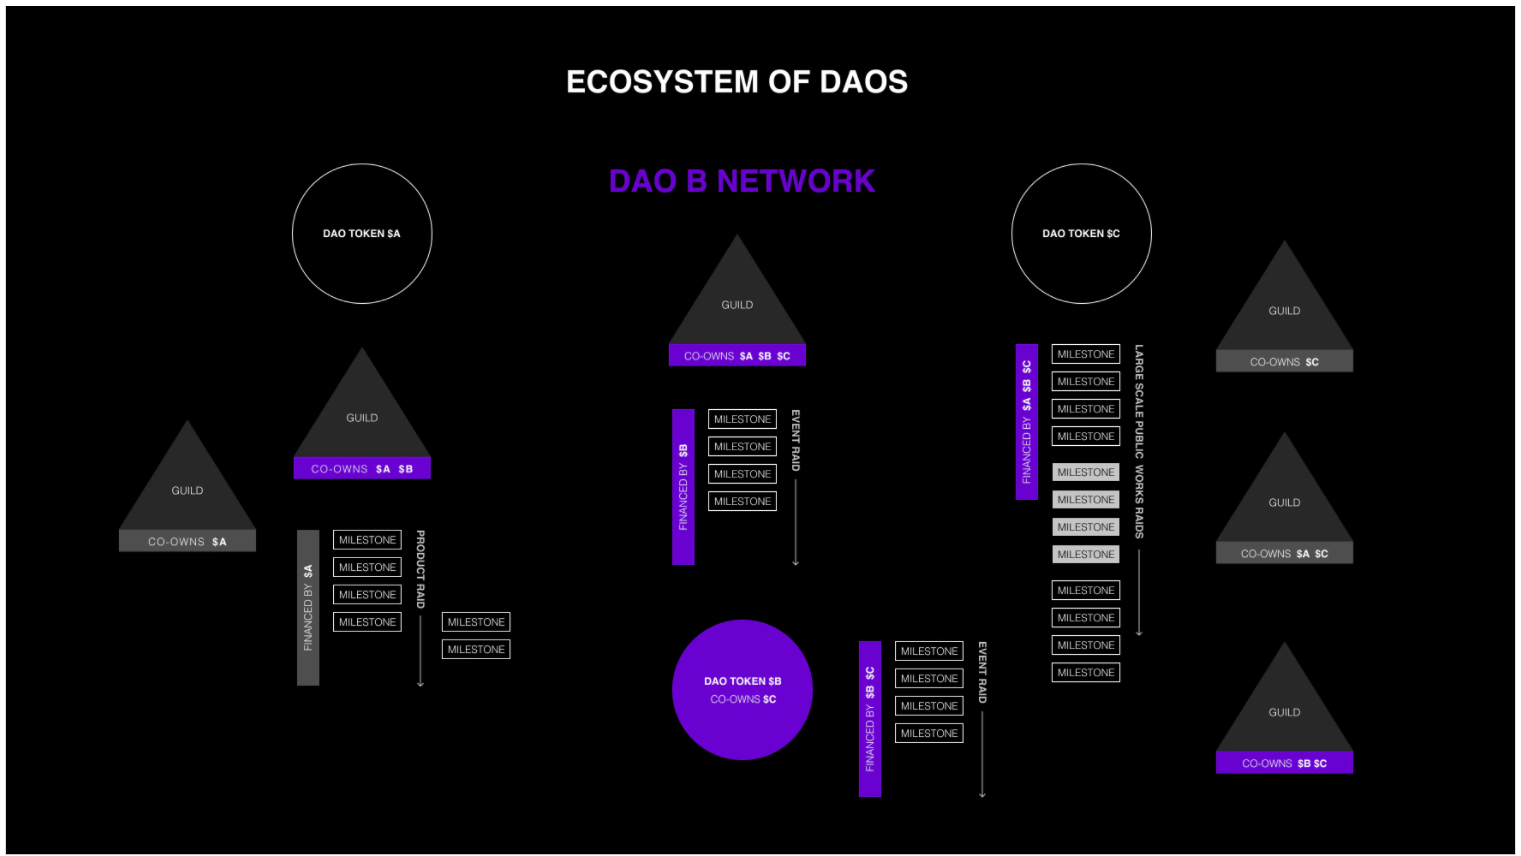 Un ejemplo de DAO en el que los tokens, los equipos y las misiones se distribuyen en varias redes de DAO, que se pueden clasificar de varias maneras.